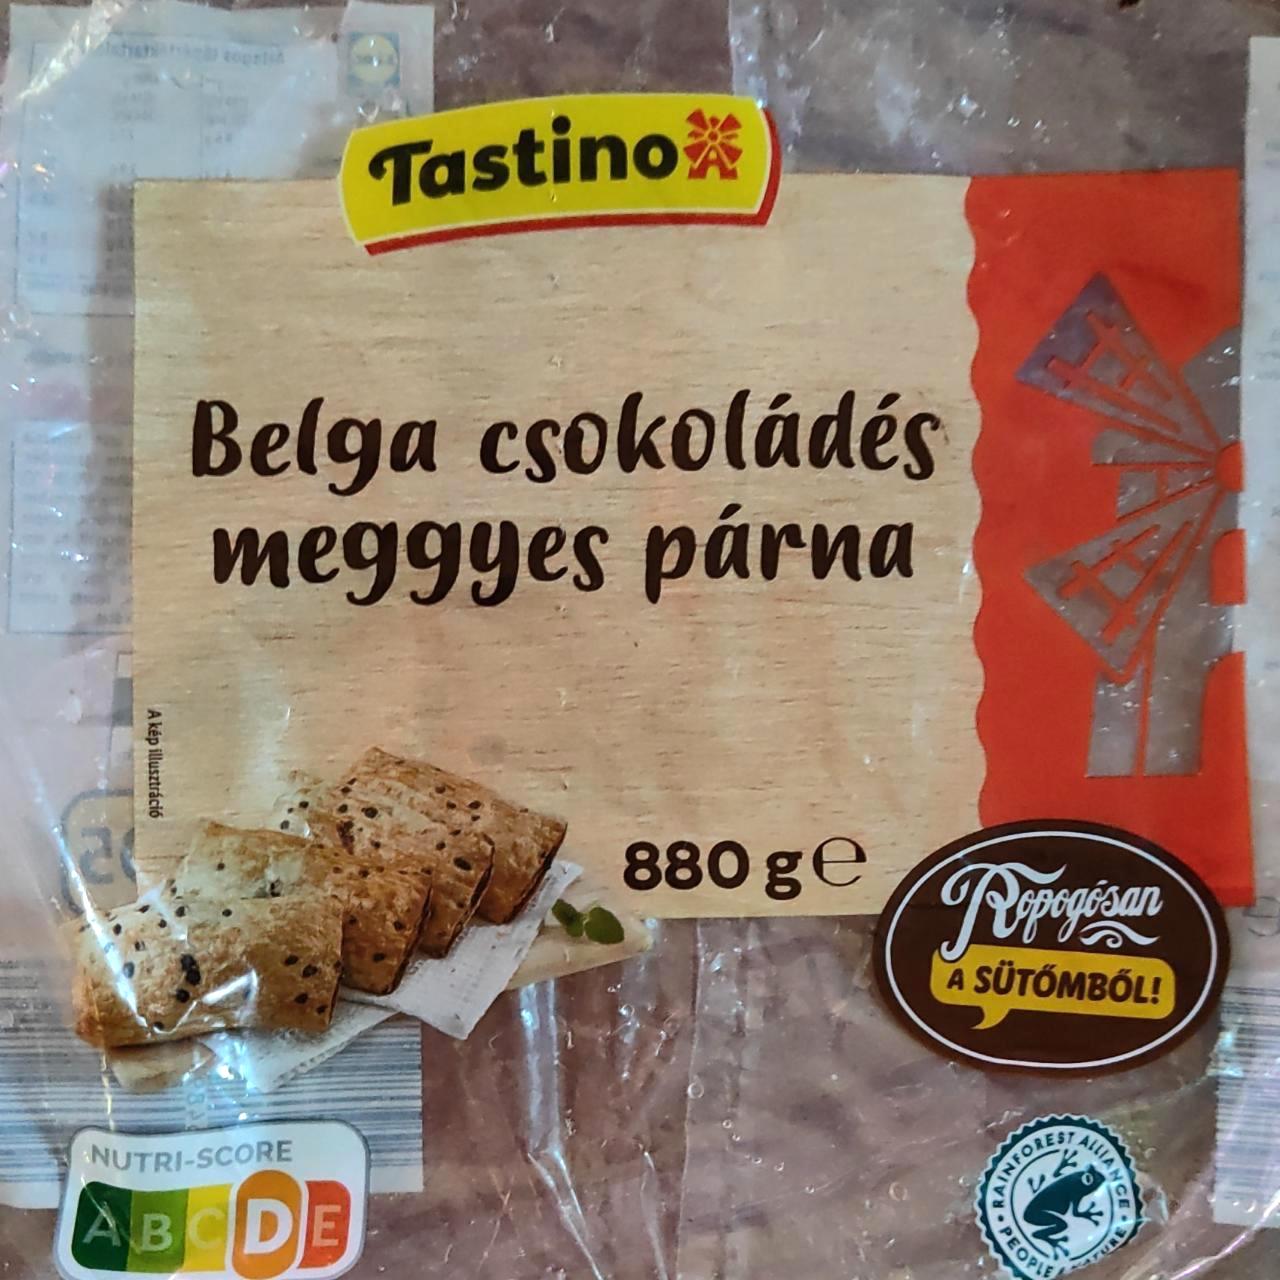 Képek - Belga csokoládés meggyes párna Tastino